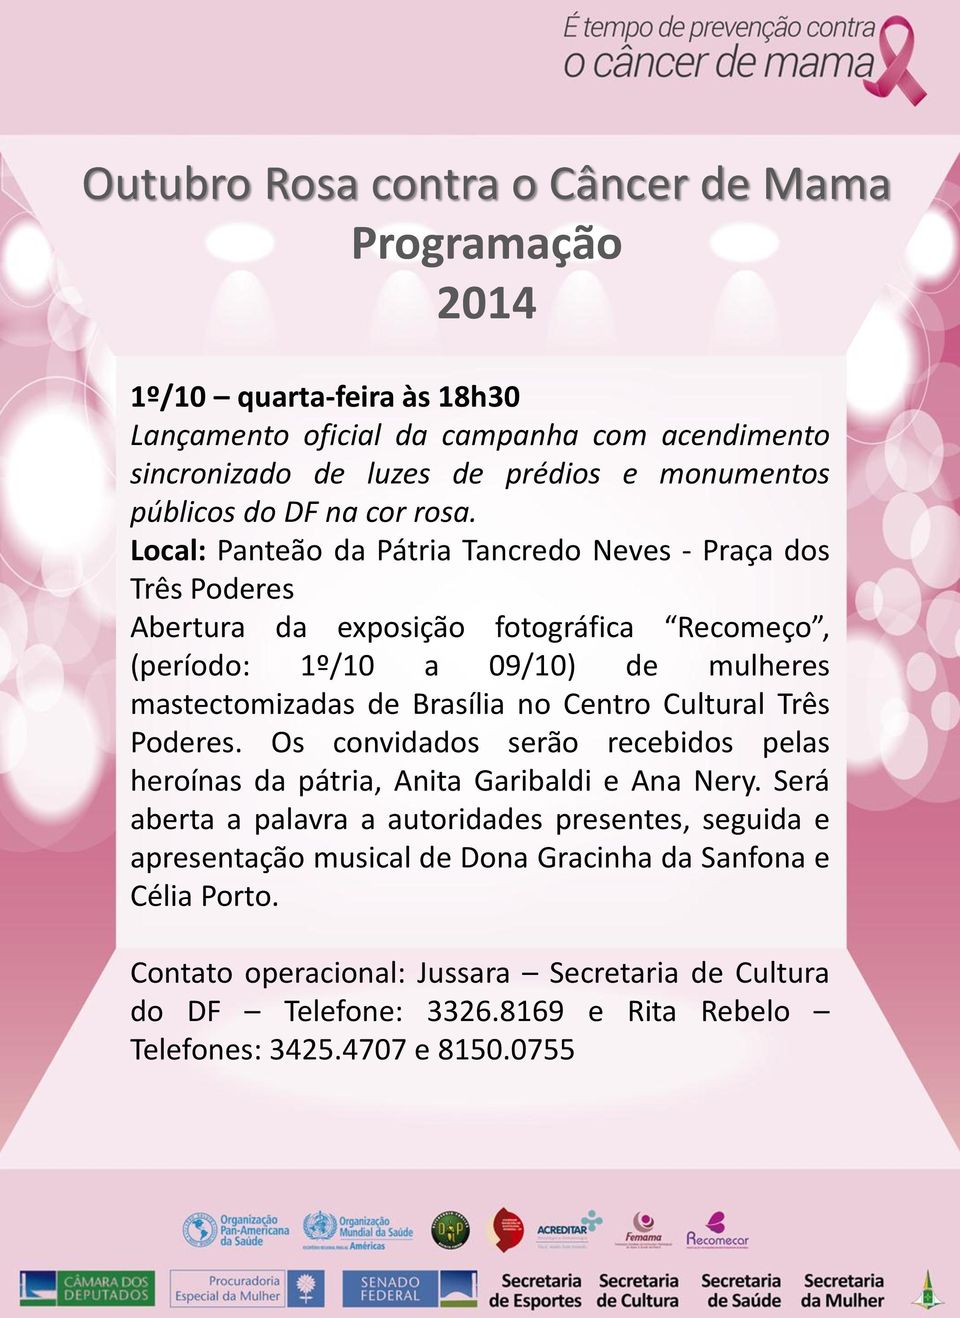 Brasília no Centro Cultural Três Poderes. Os convidados serão recebidos pelas heroínas da pátria, Anita Garibaldi e Ana Nery.